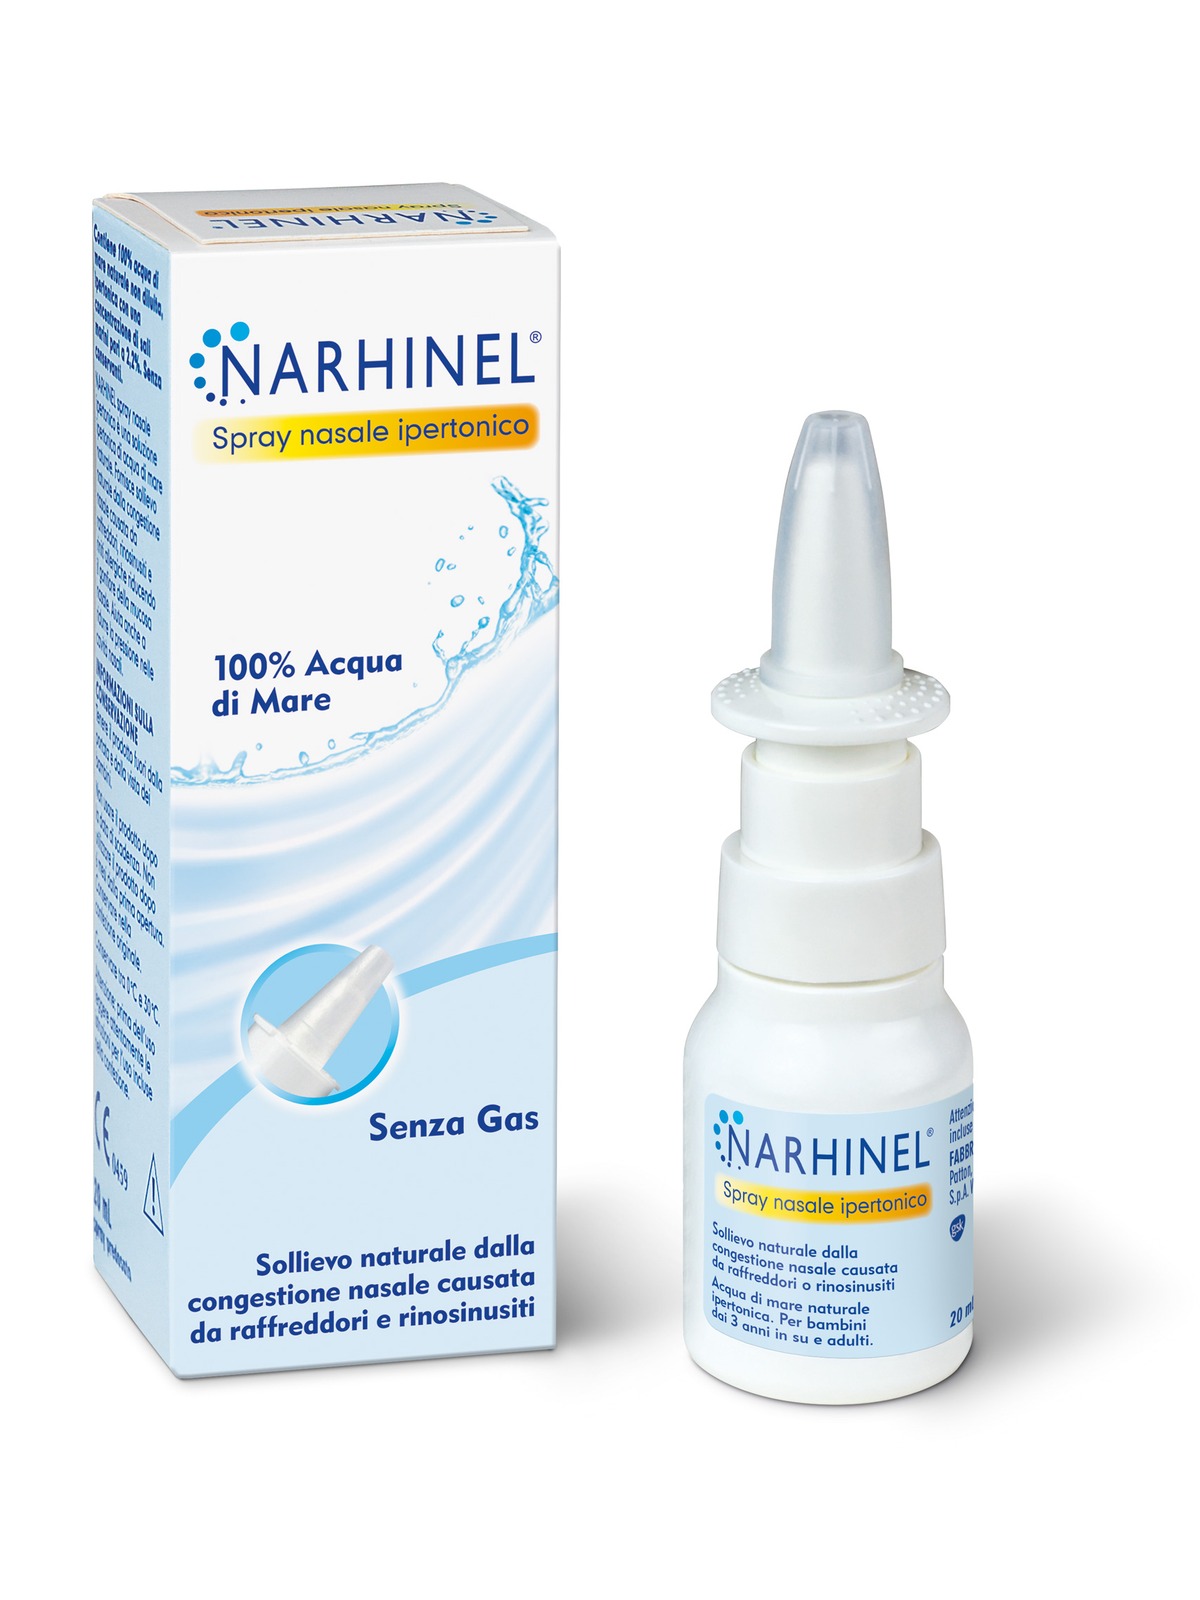 Narhinel spray nasale ipertonico, soluzione ipertonica di acqua di mare, per un sollievo dal naso chiuso dovuto a raffreddore, rinosinusite e rinite allergica, 20 ml - NARHINEL